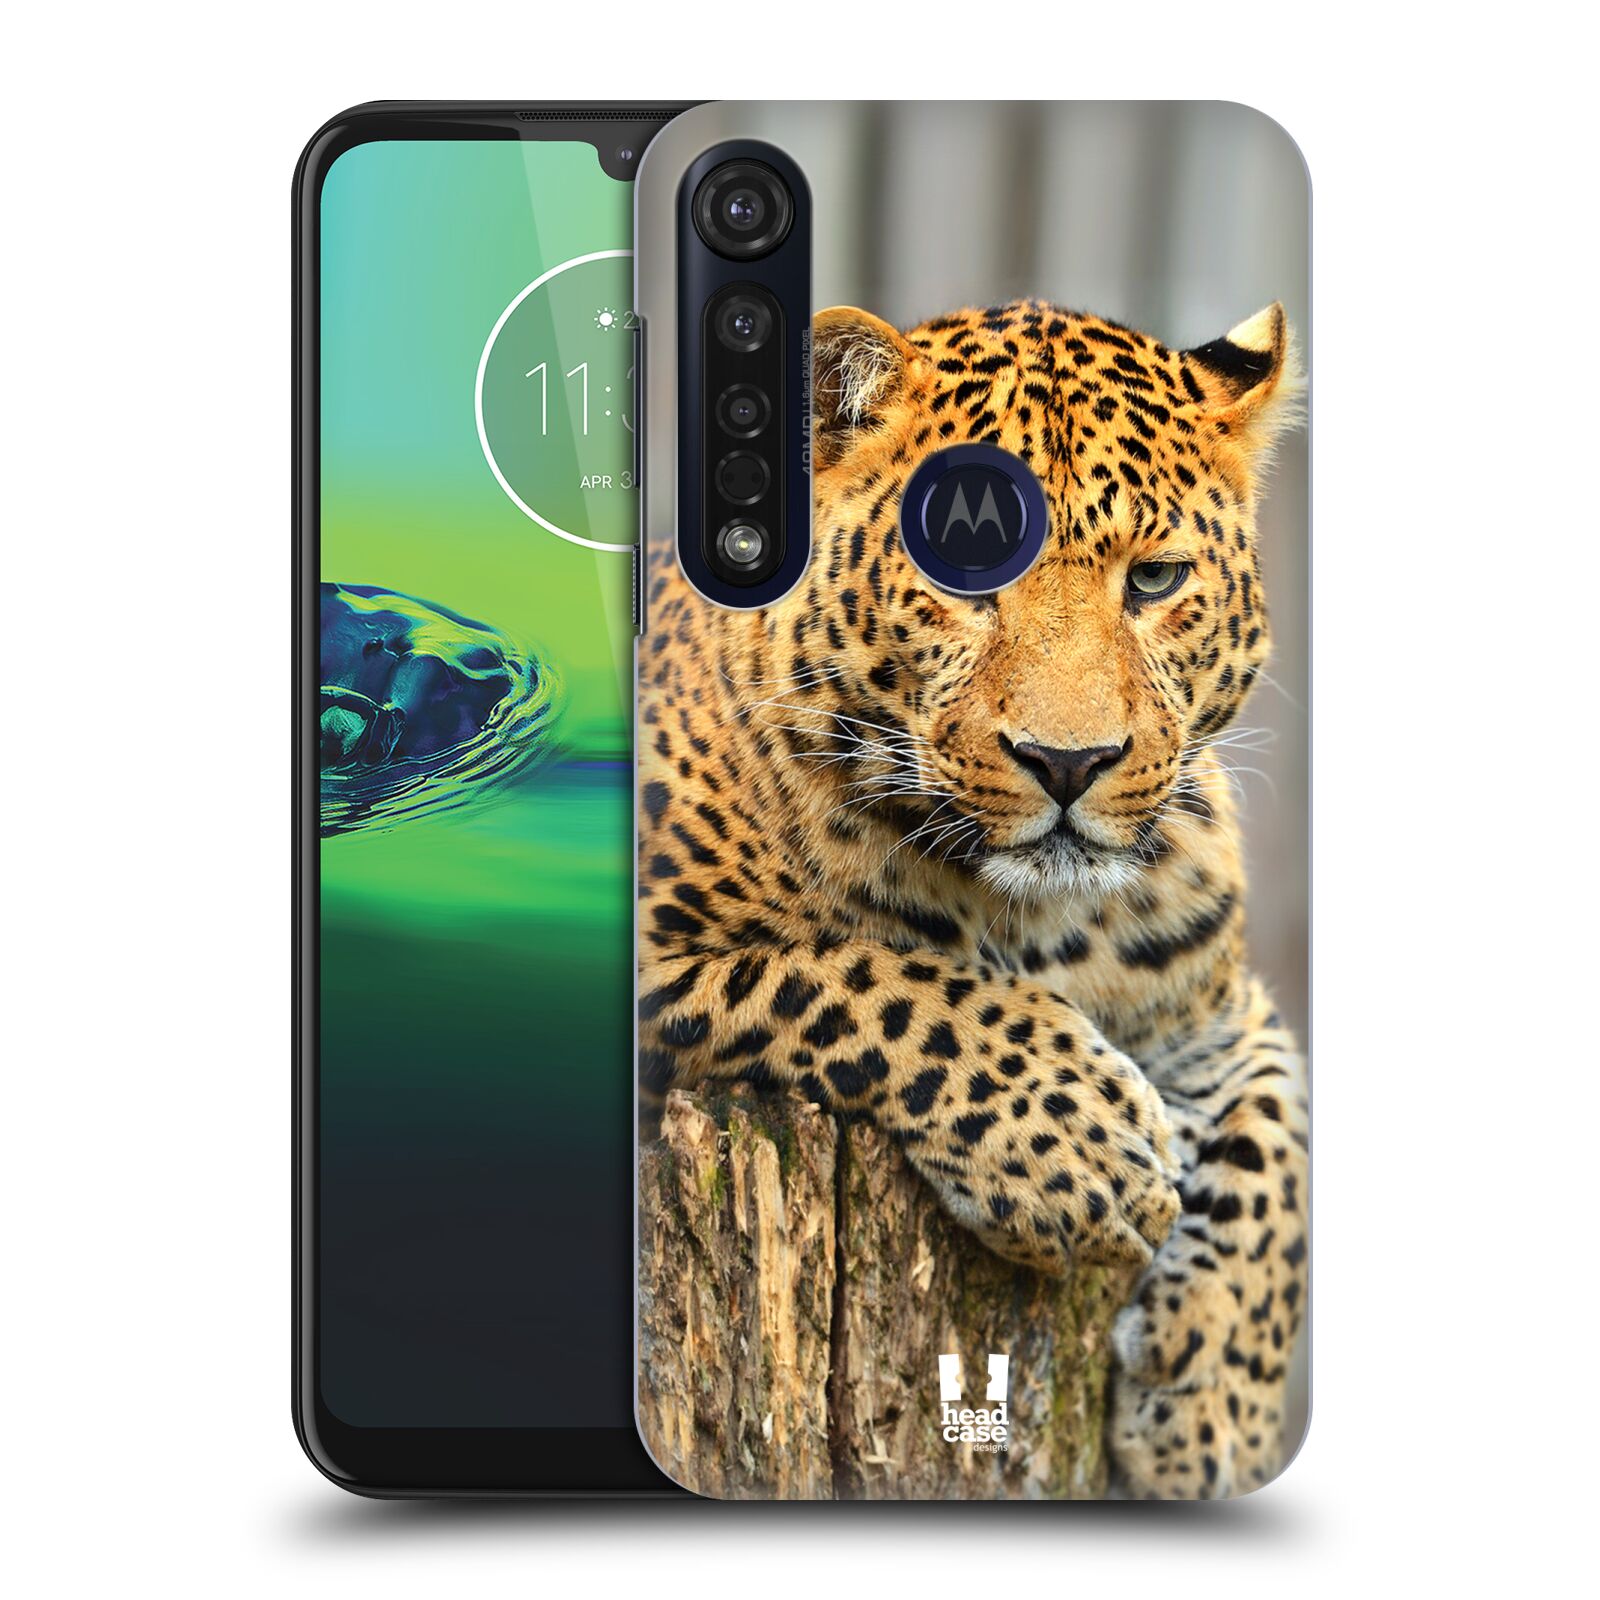 Pouzdro na mobil Motorola Moto G8 PLUS - HEAD CASE - vzor Divočina, Divoký život a zvířata foto LEOPARD PORTRÉT